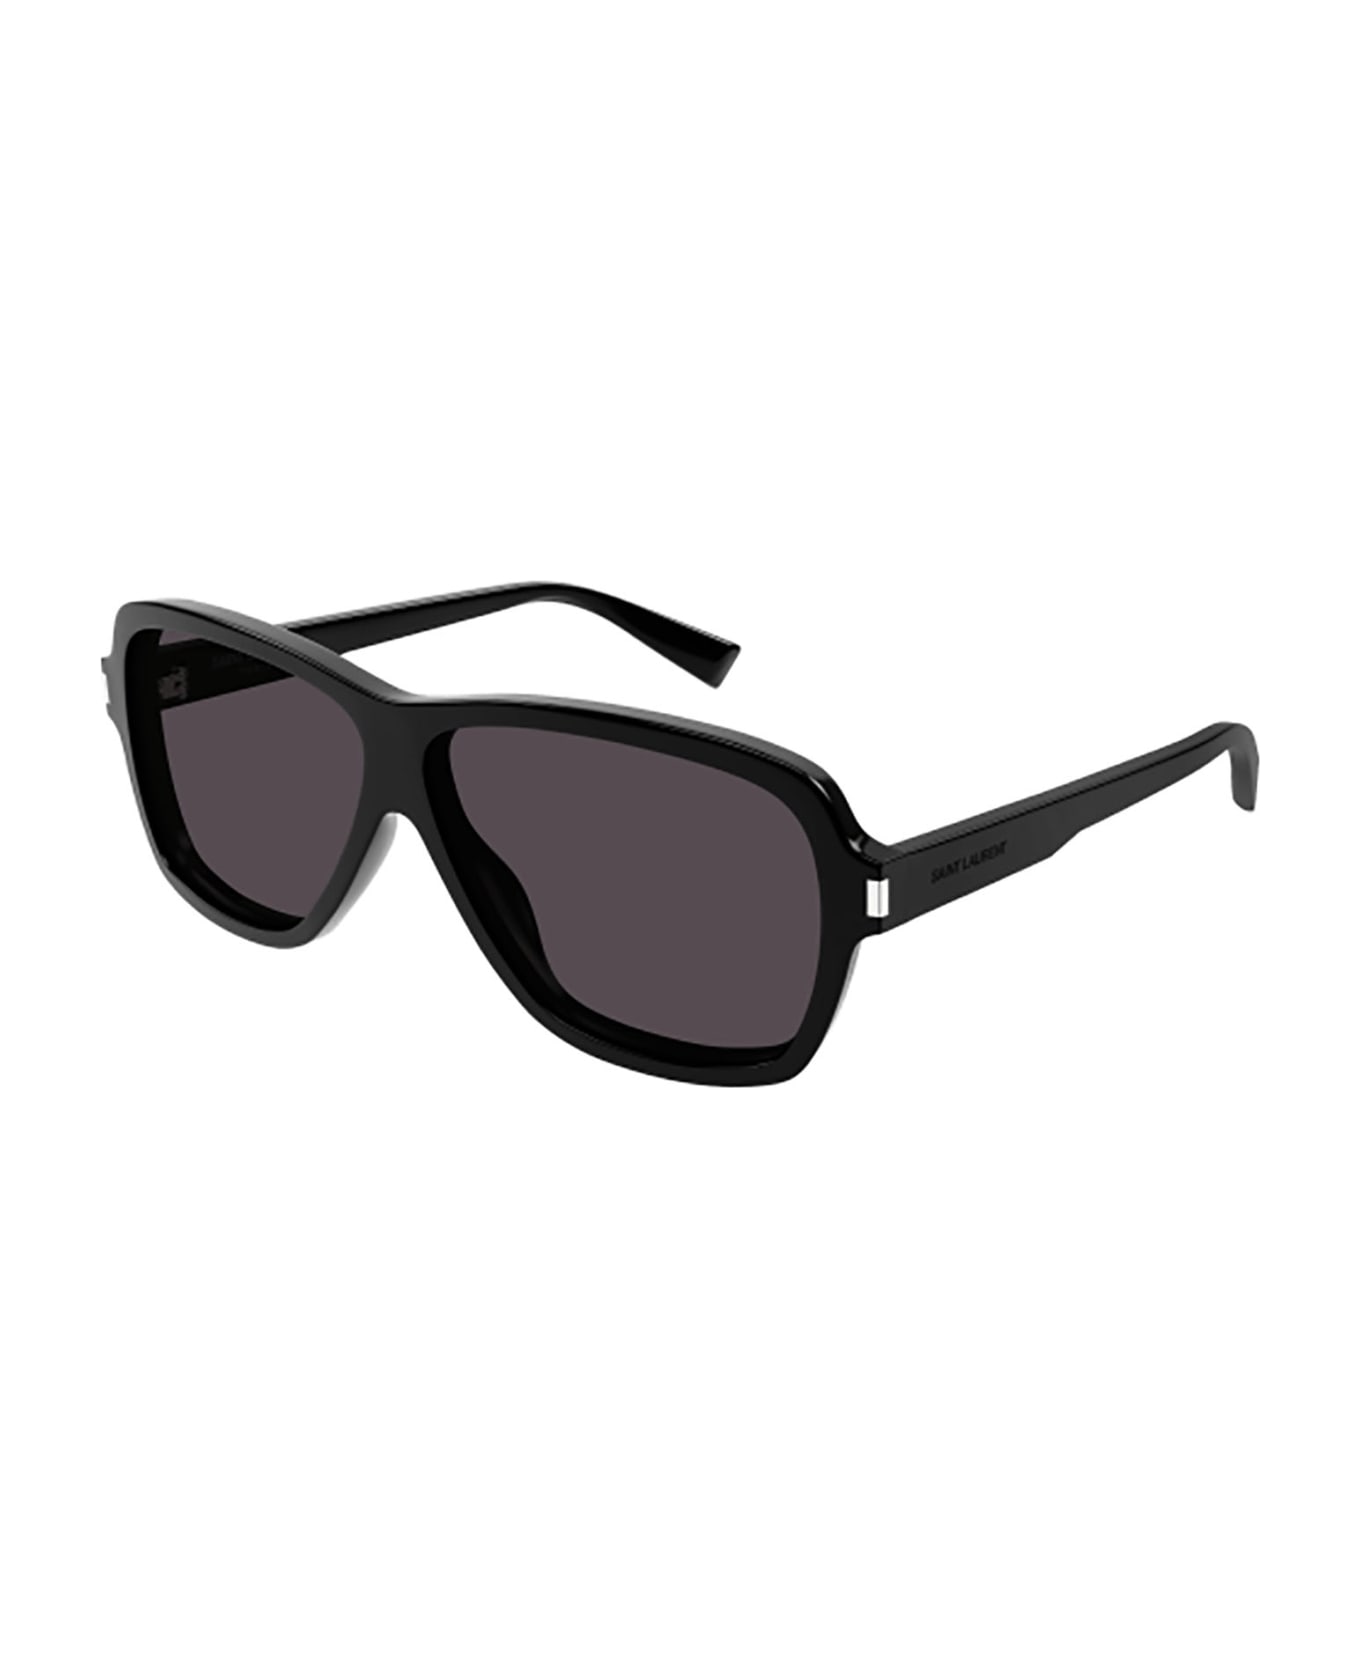 Saint Laurent Eyewear SL 609 CAROLYN Sunglasses - Black Black Black サングラス